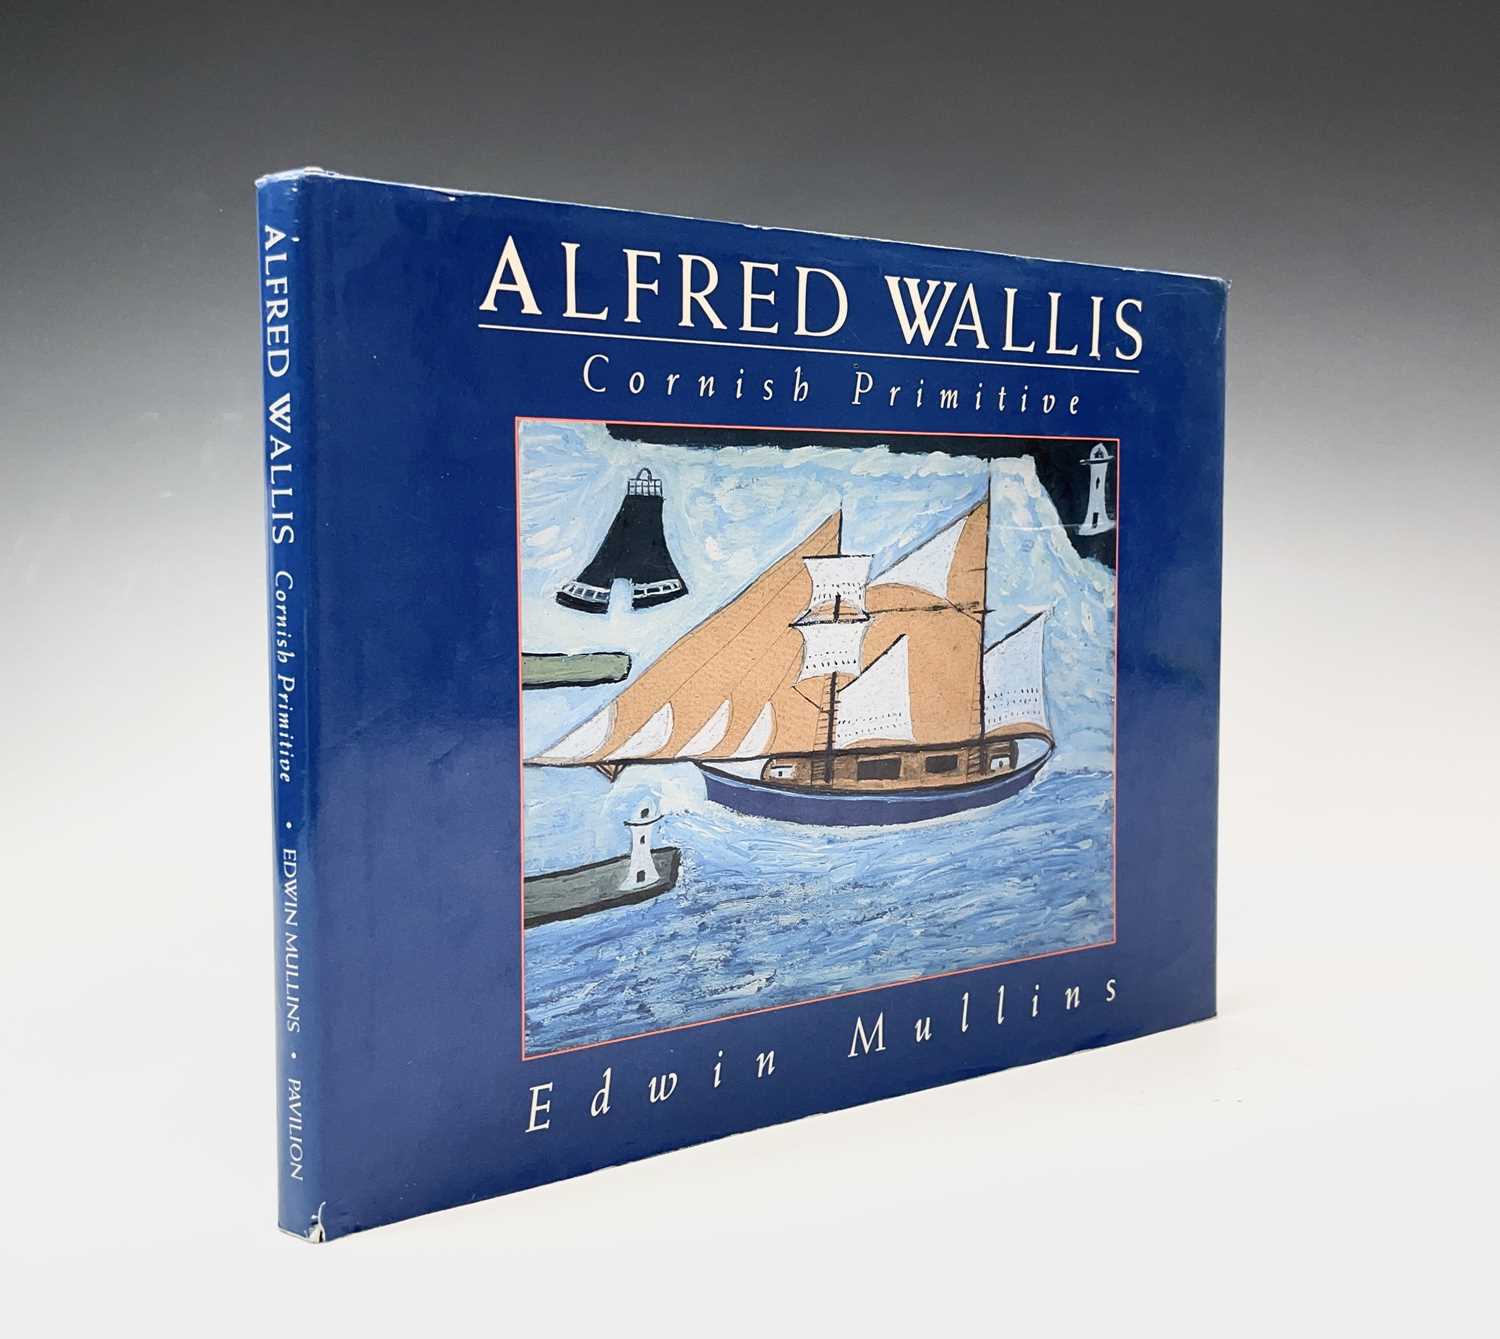 Lot 837 - Edwin MULLINS 'Alfred Wallis, Cornish...